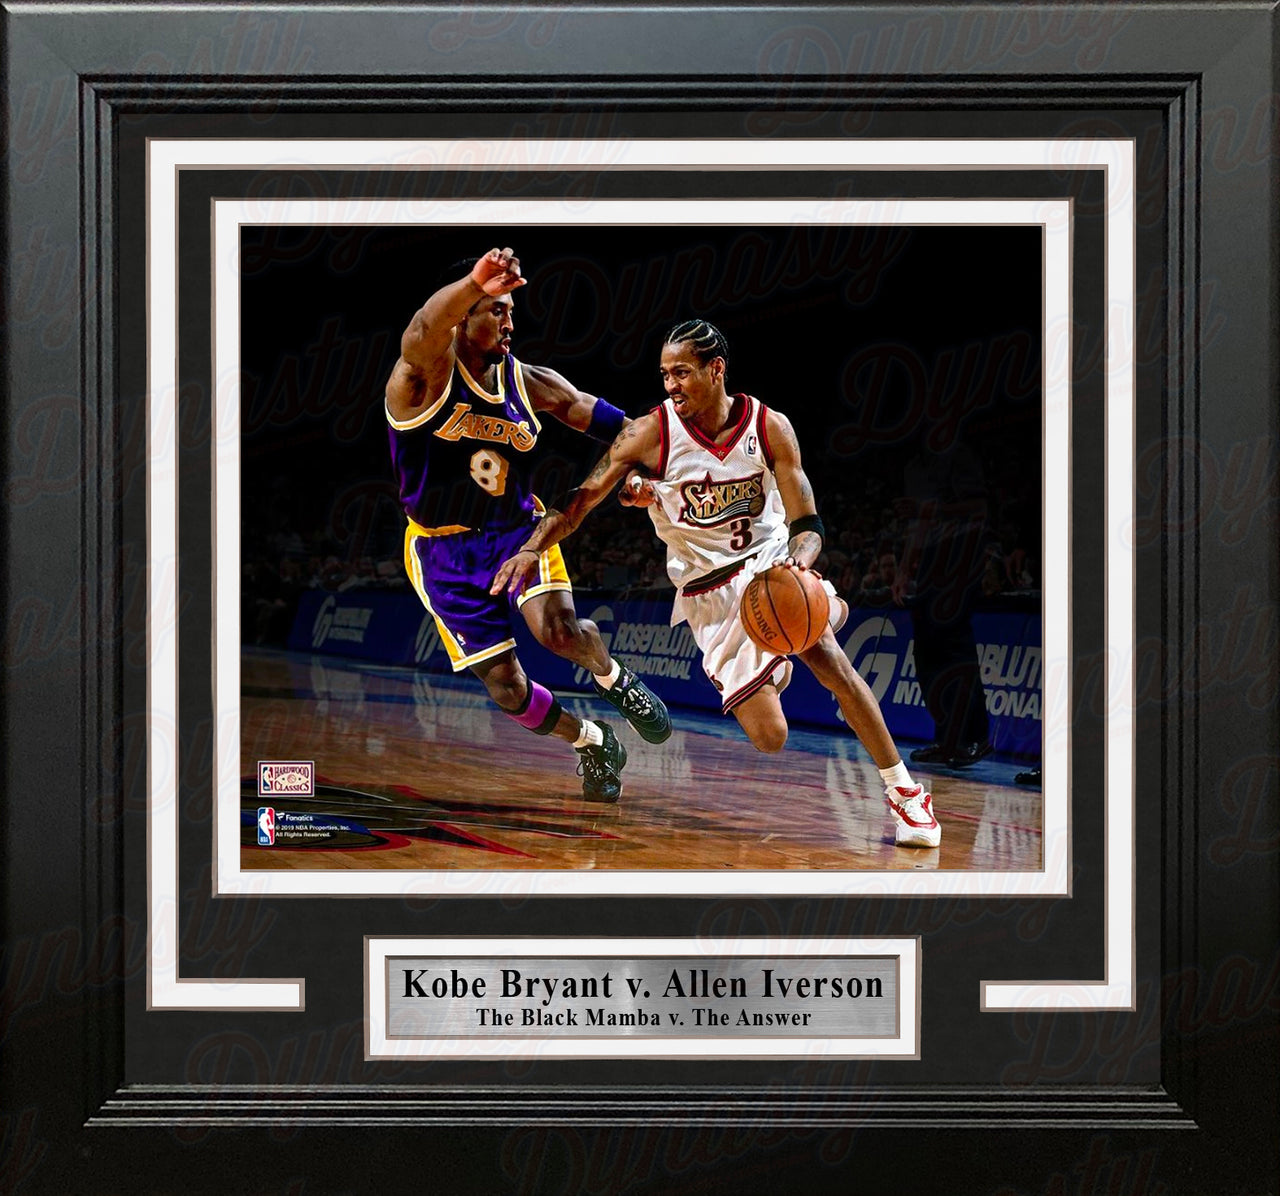 Kobe Bryant v. Allen Iverson 8" x 10" Framed Basketball Photo - Dynasty Sports & Framing 